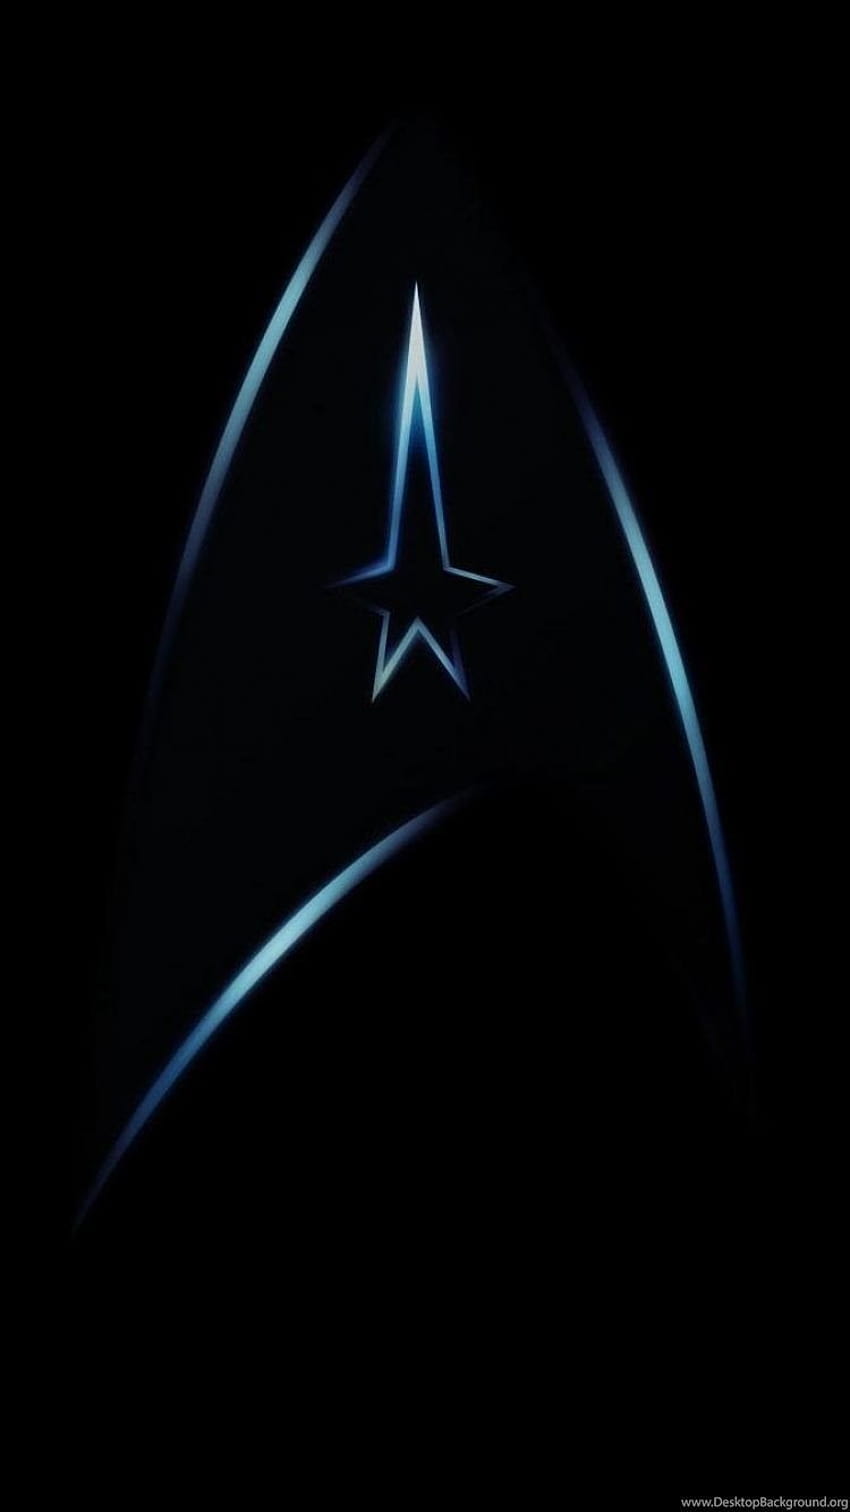 ボード「iphone sci fi, galaxy android star trek」のピン HD電話の壁紙